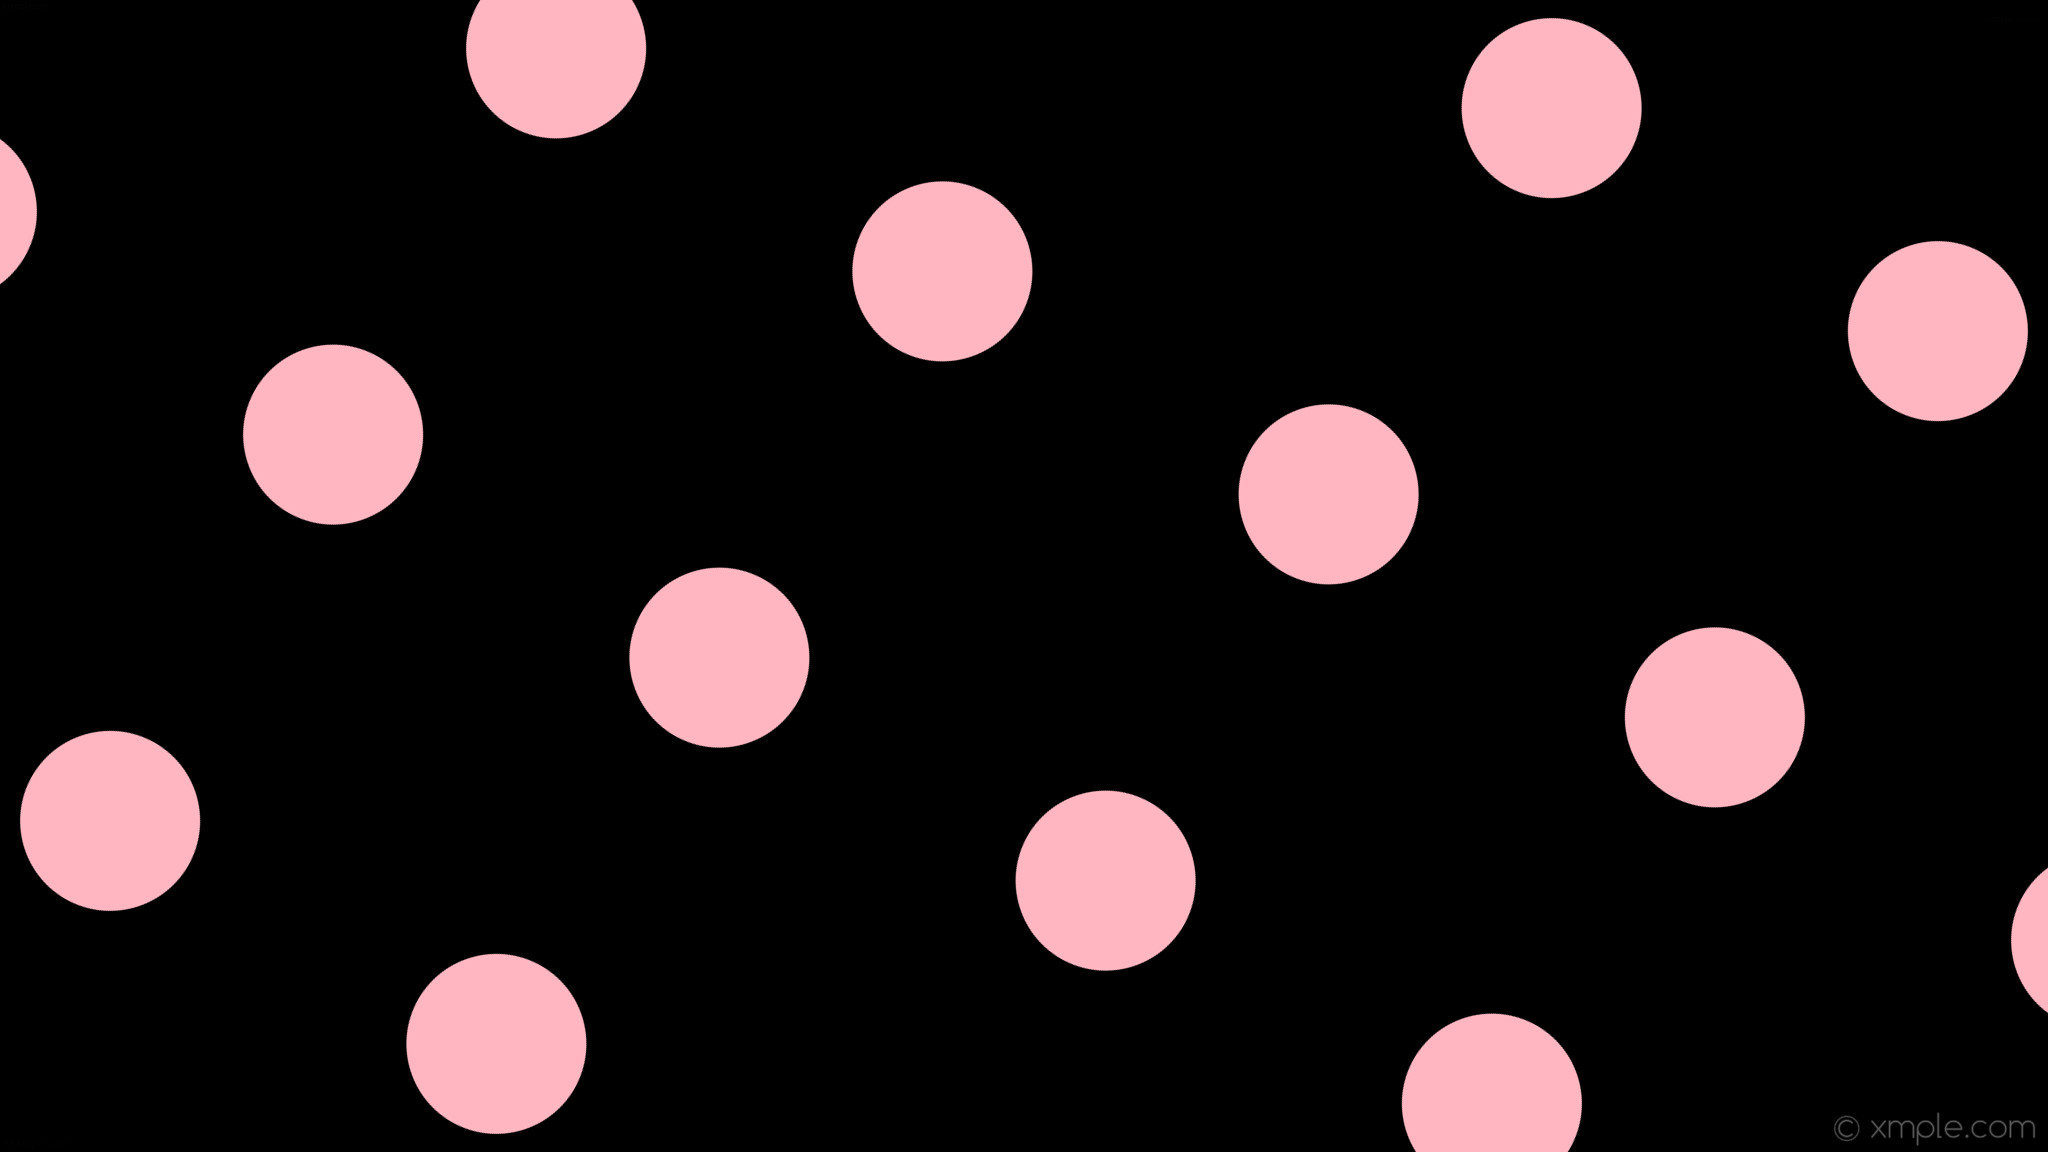 wallpaper pink black spots polka dots light pink #000000 #ffb6c1 330Â° 180px  446px